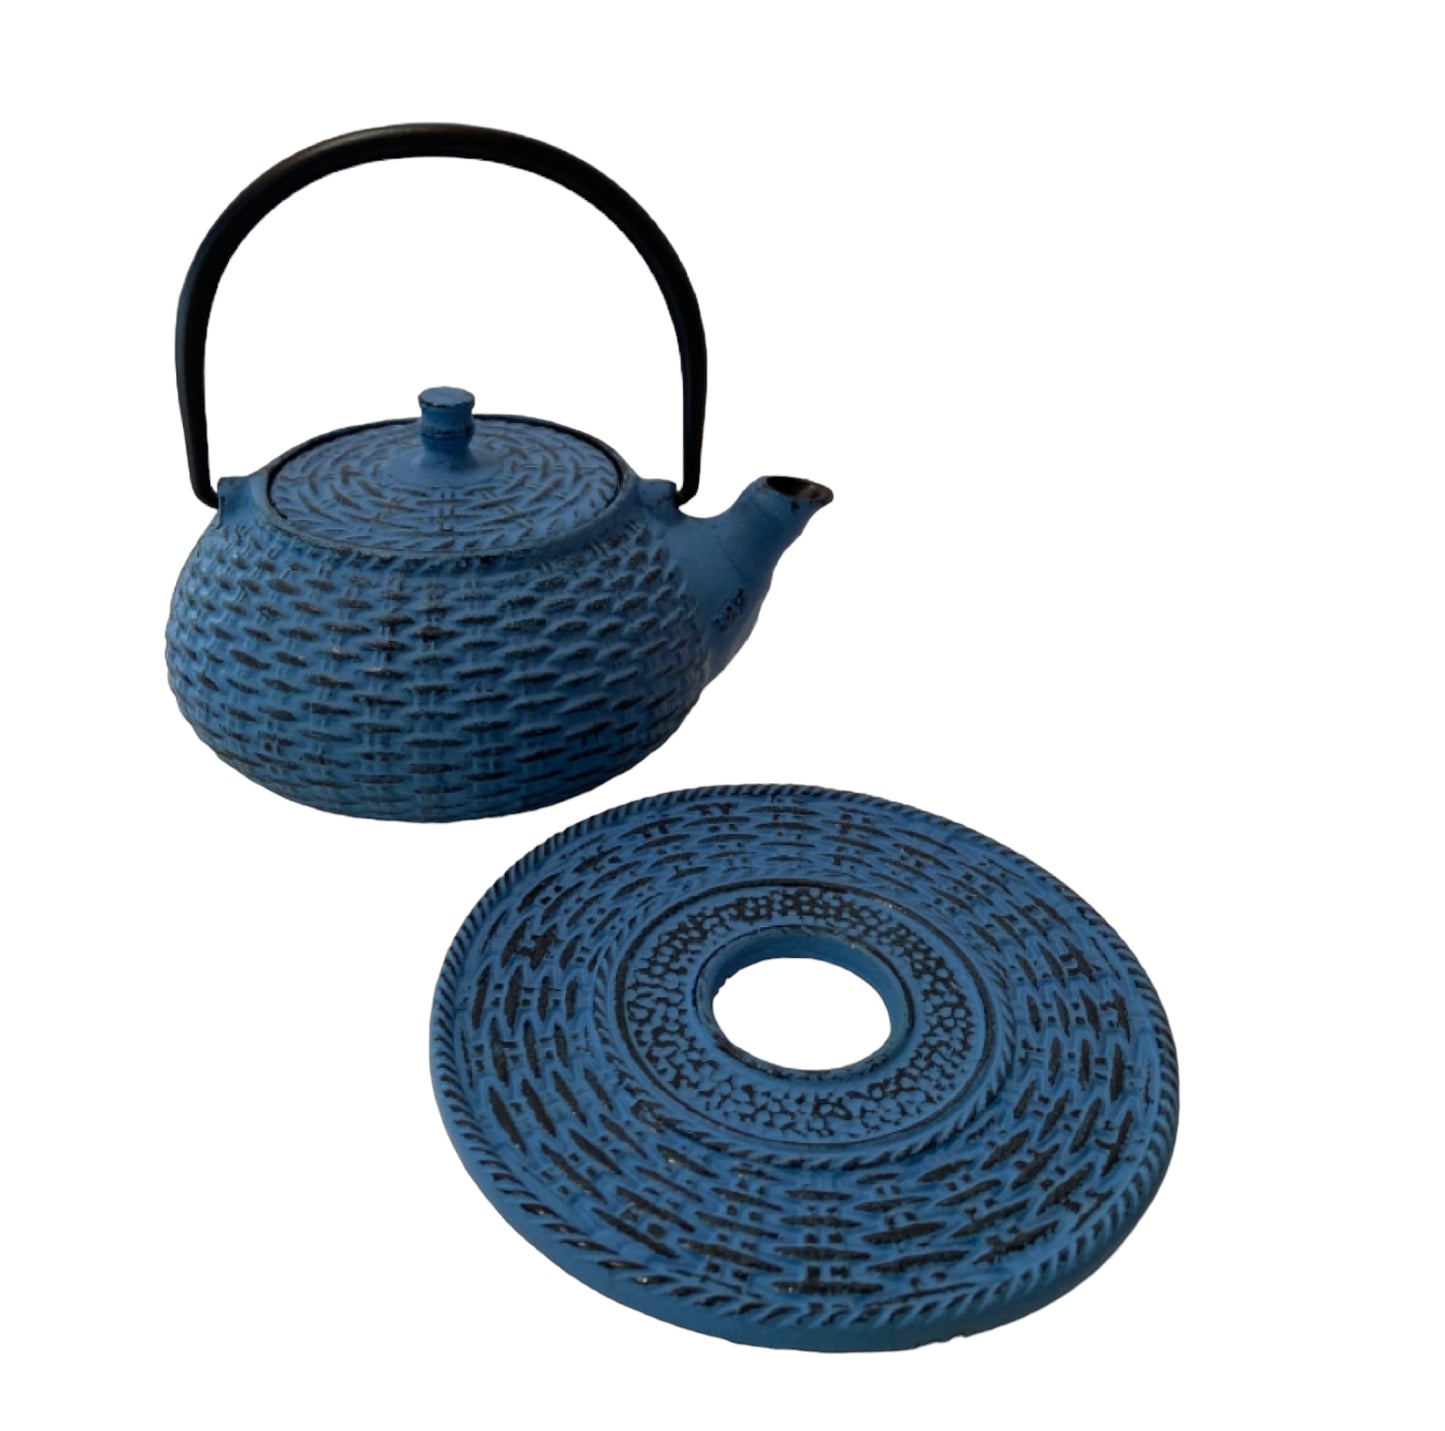 Teapot Cast Iron Blue Vintage